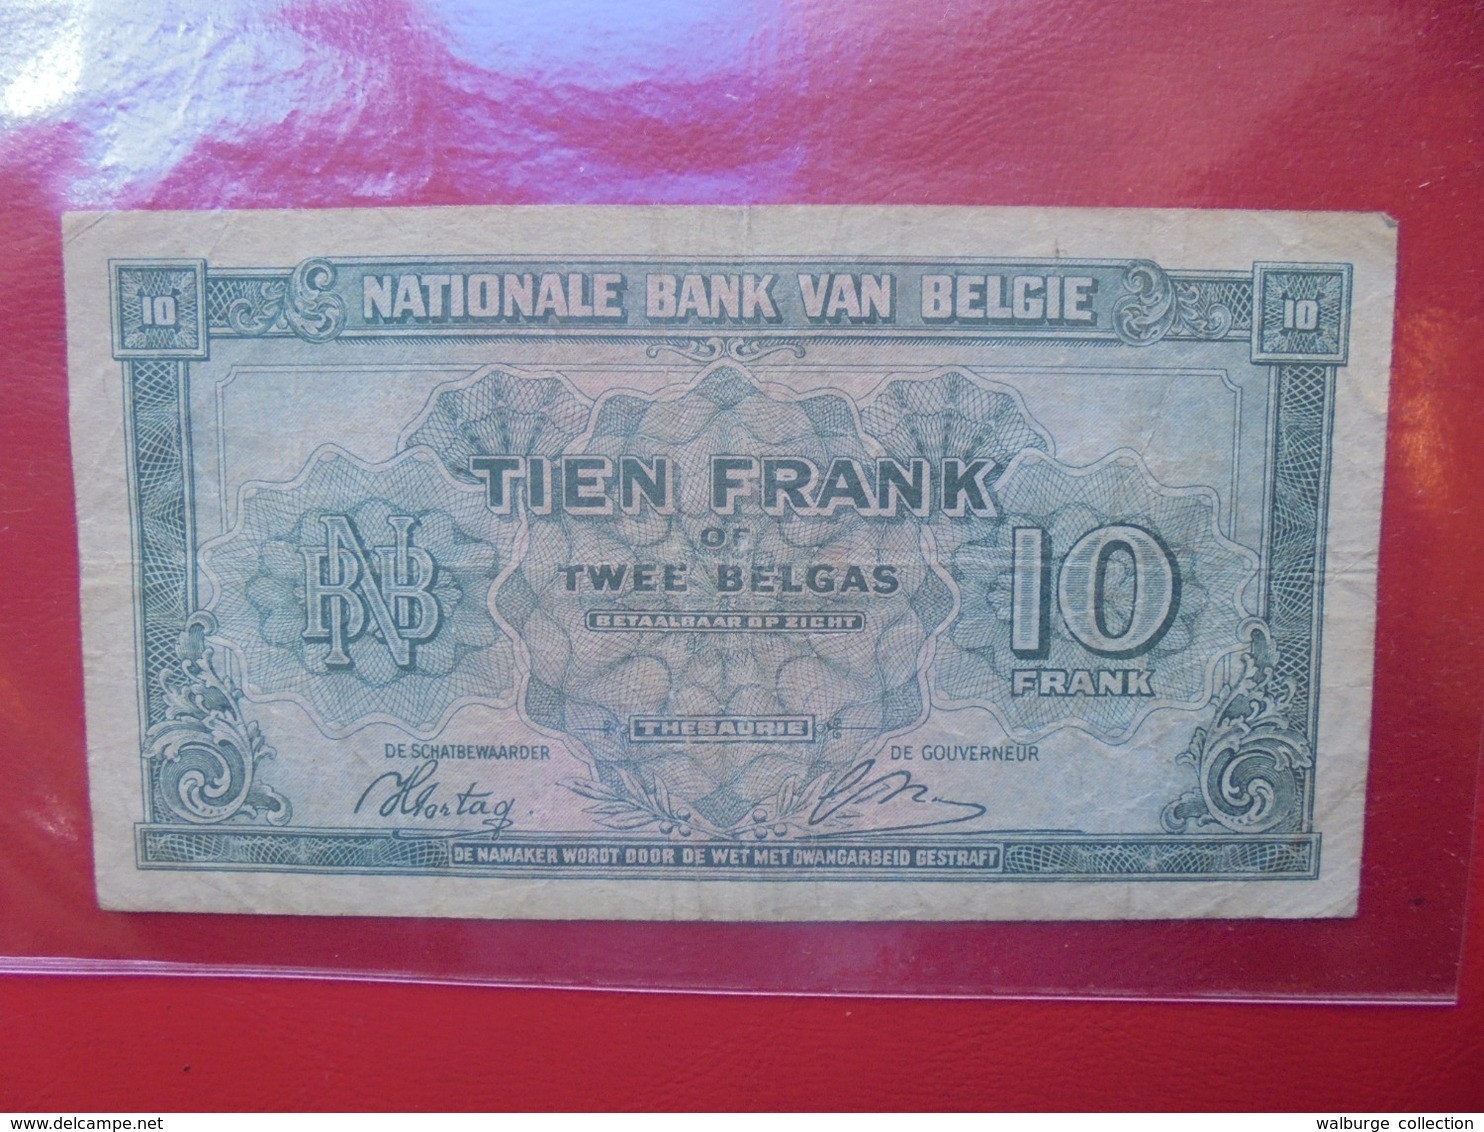 BELGIQUE 10 FRANCS 1943 CIRCULER (B.7) - 10 Francs-2 Belgas